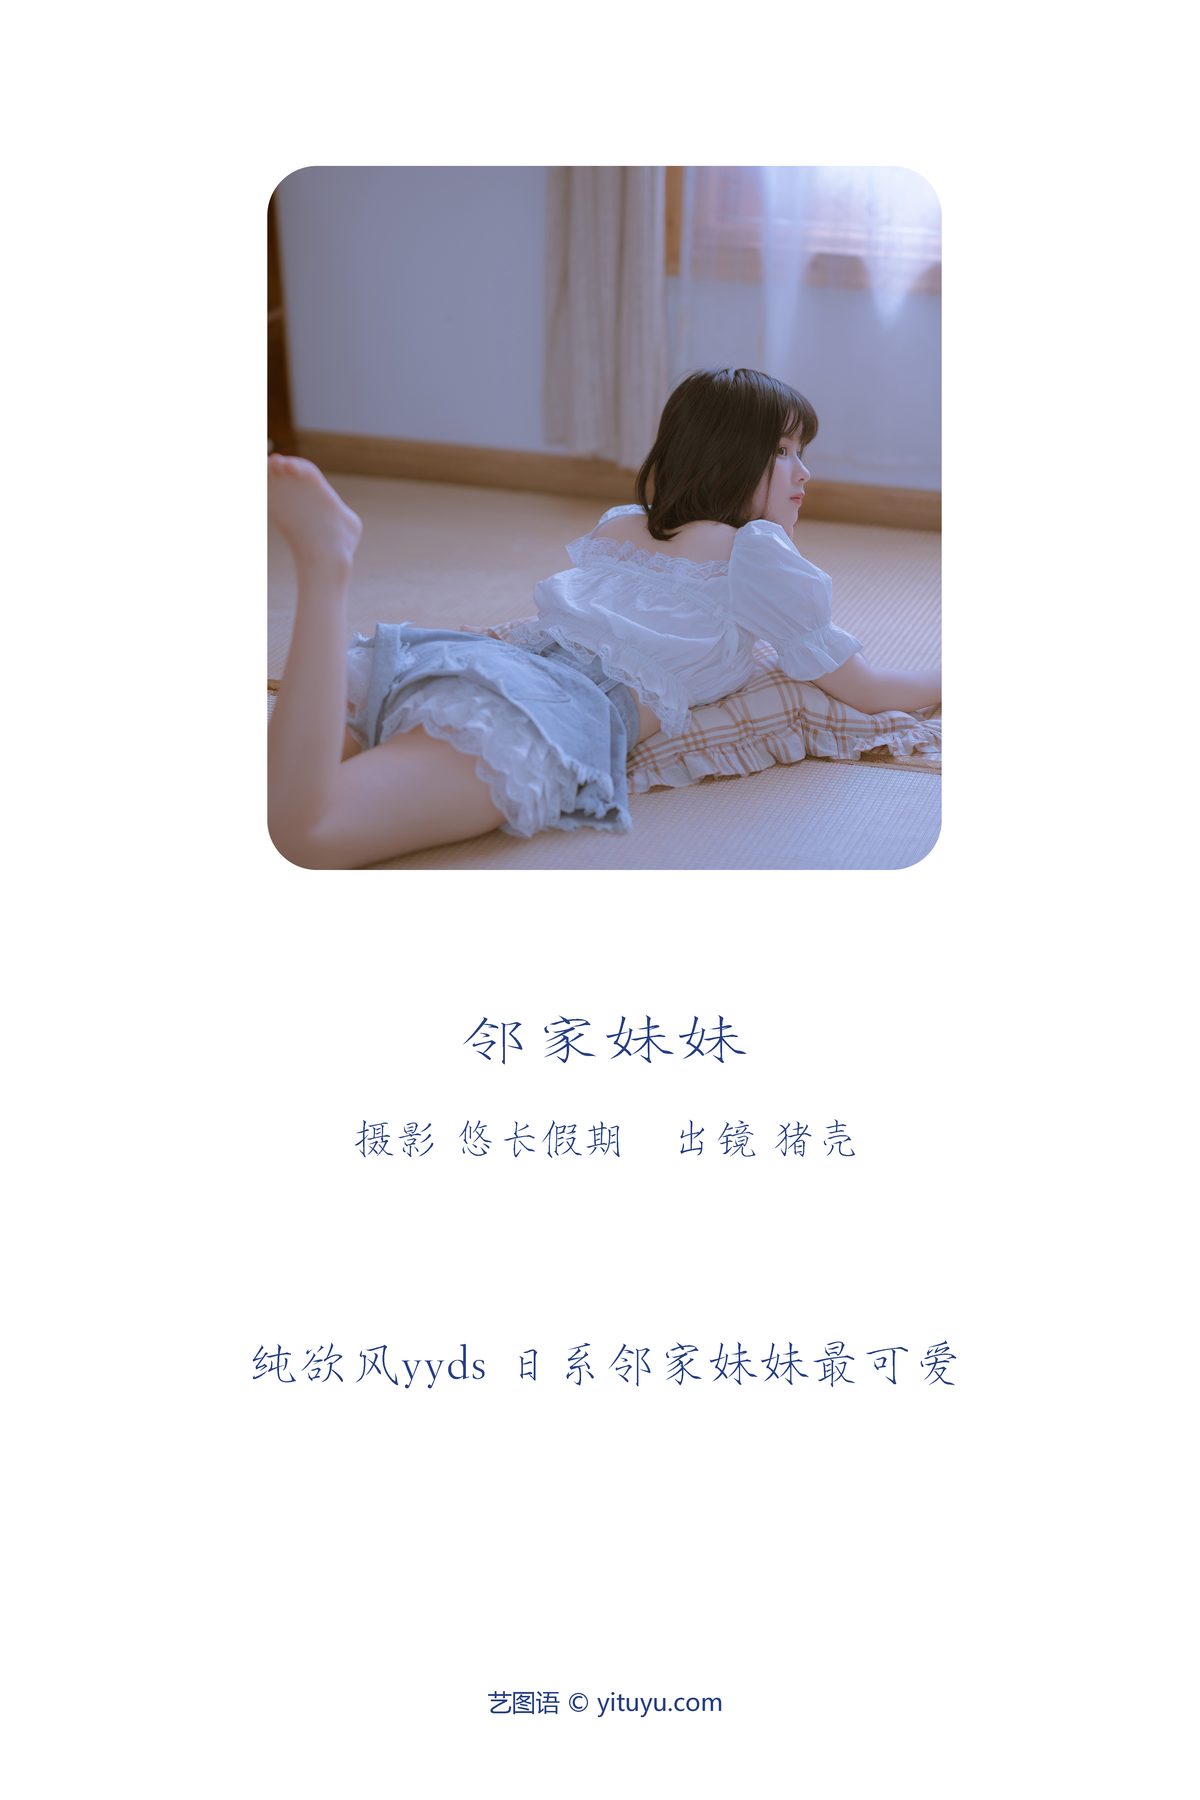 YiTuYu艺图语 Vol 3670 Zhu Ke Shi Zhi Ju 0001 2828126574.jpg